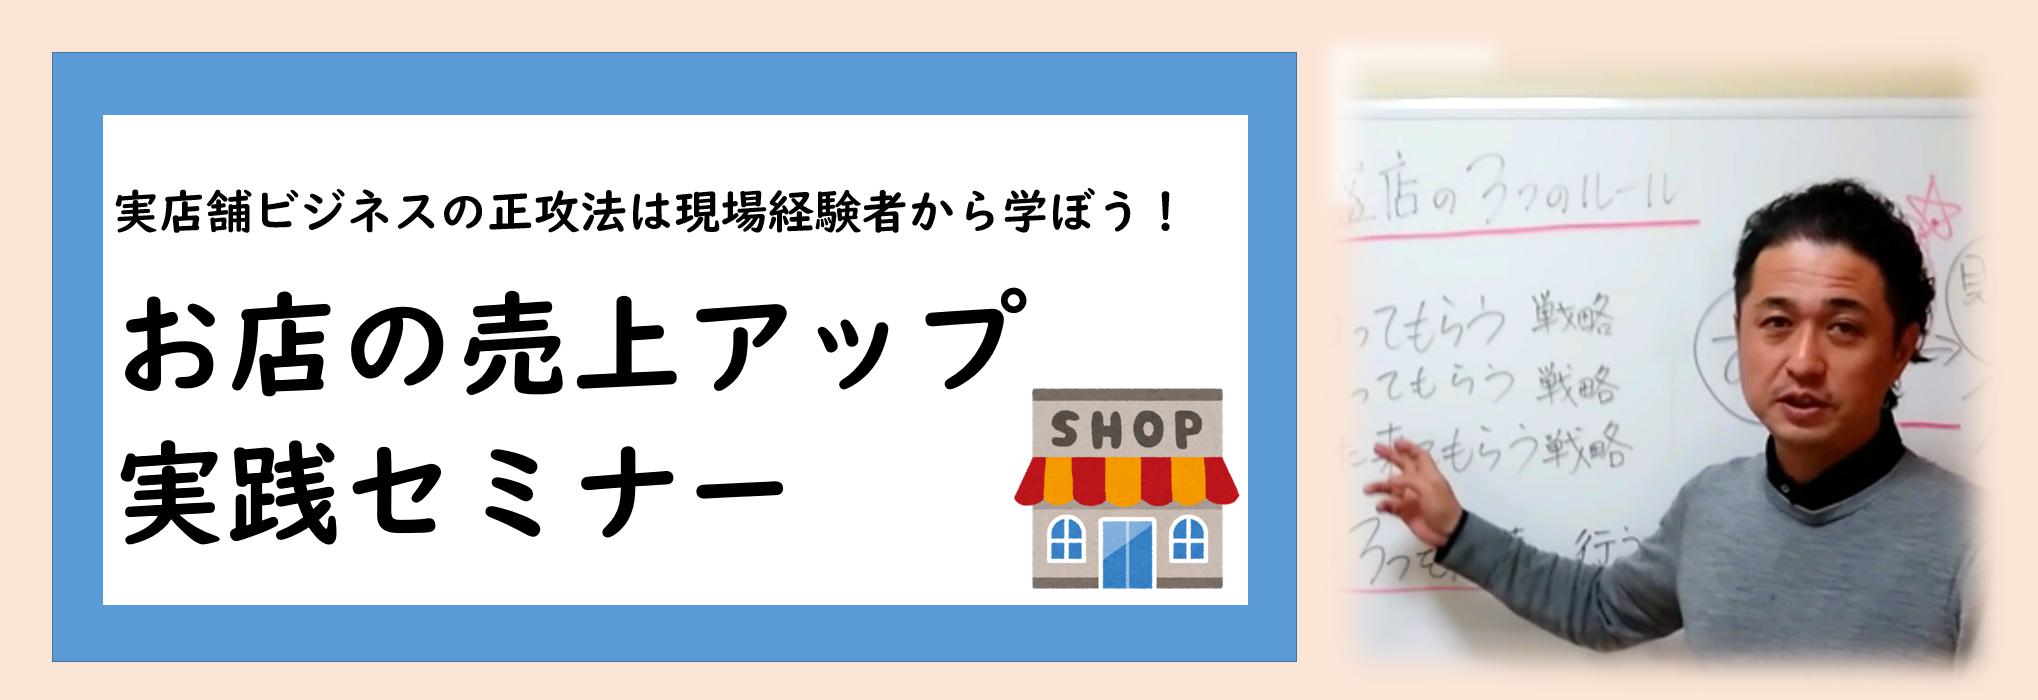 大阪市淀川区の実店舗の売上アップに特化した ビジネスサポートのお店の売上アップ実践セミナー